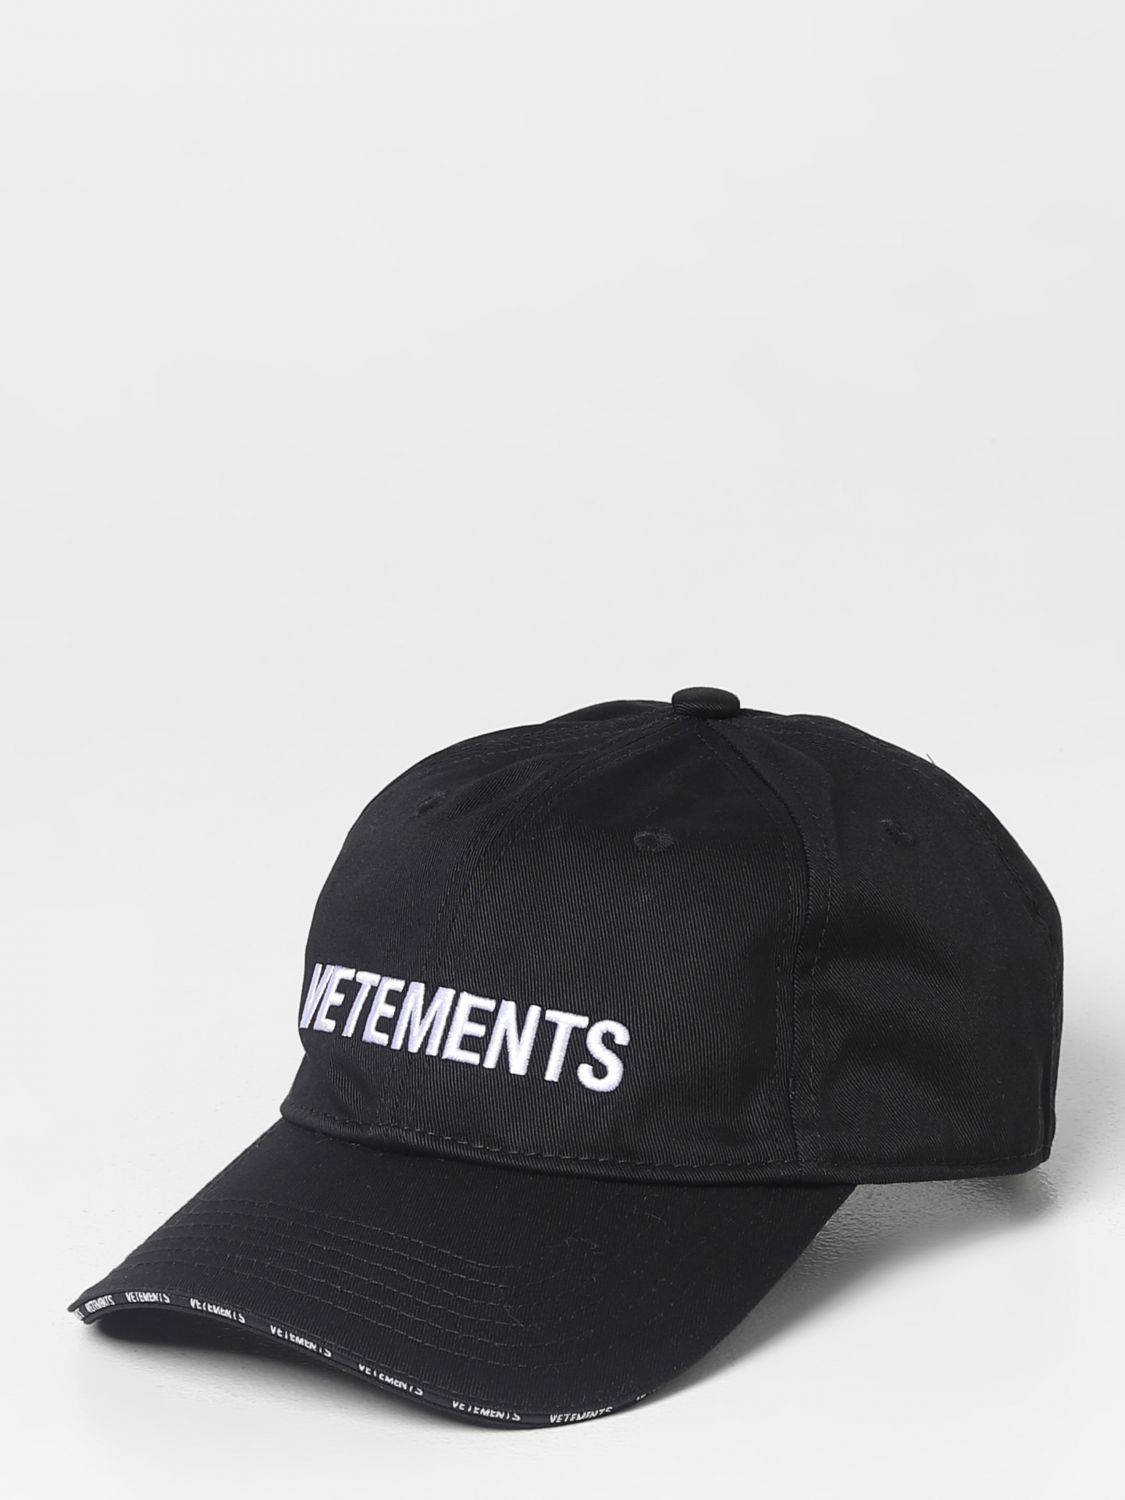 VETEMENTS BASEBALL CAP - 帽子